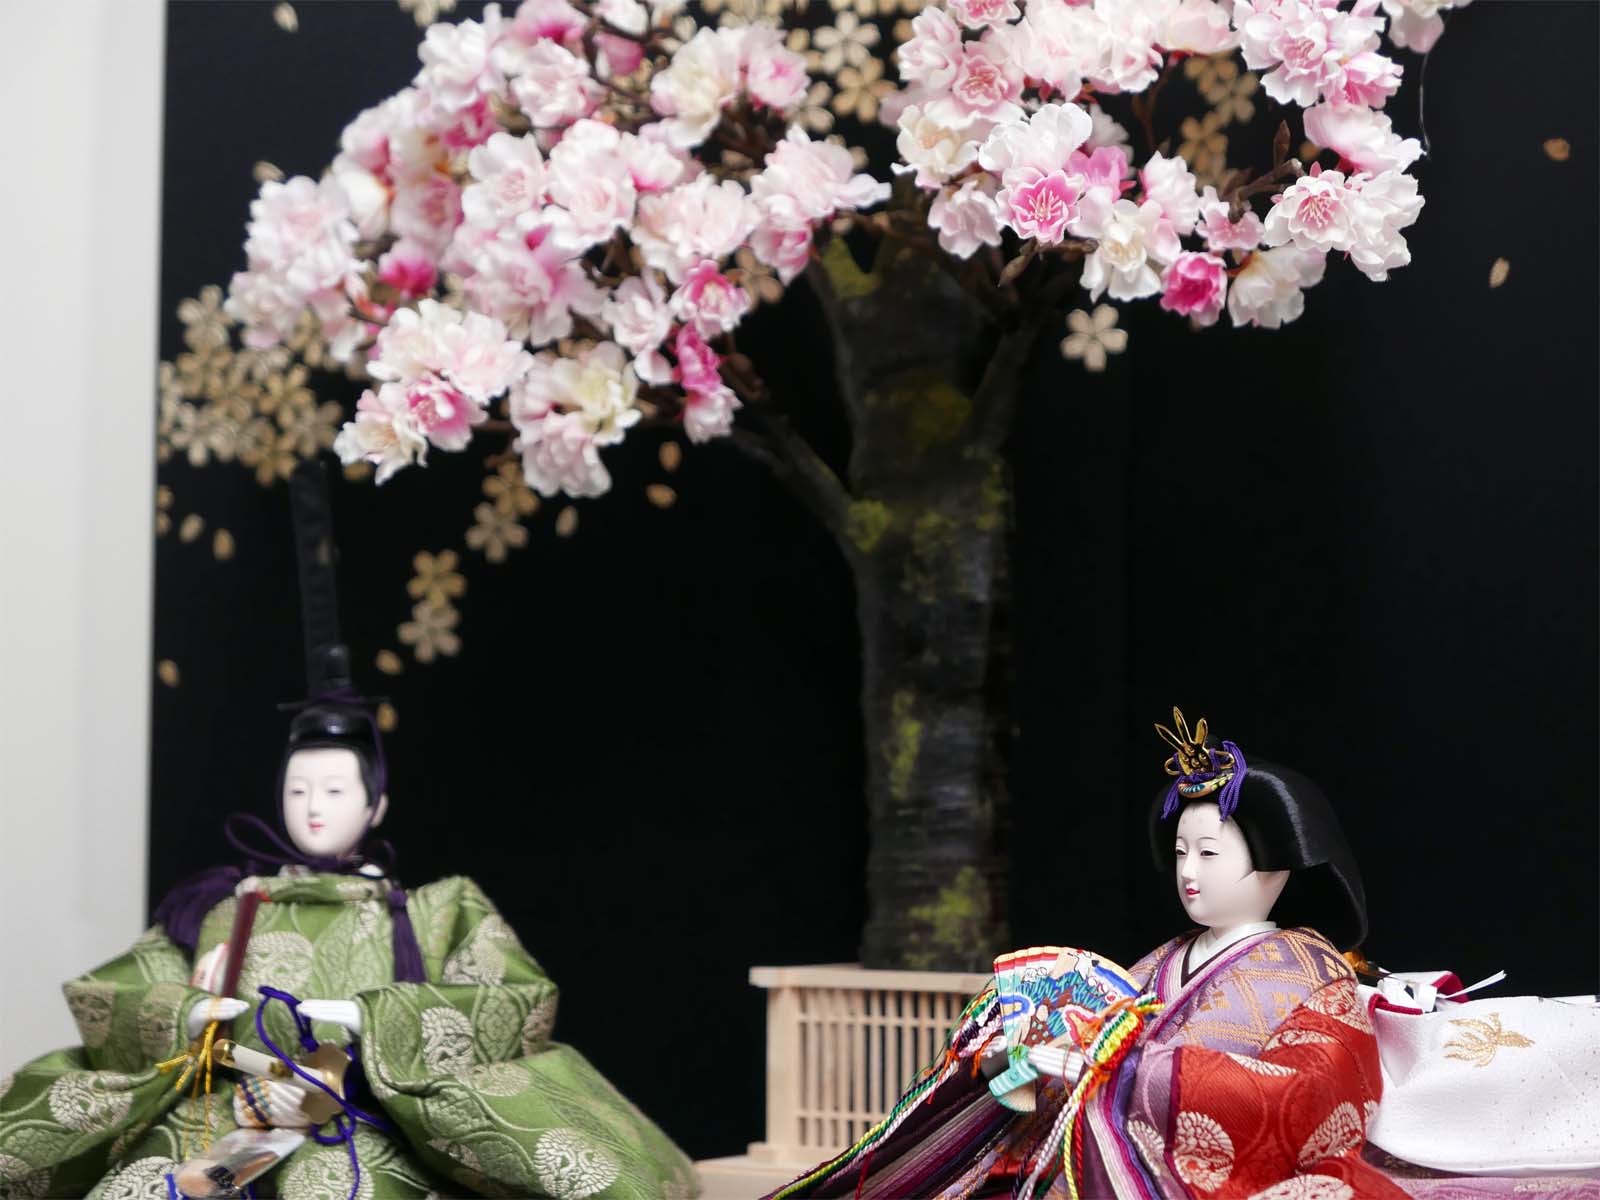 望月龍翠作 有職文様正絹衣装雛人形桜の宴創作親王飾り